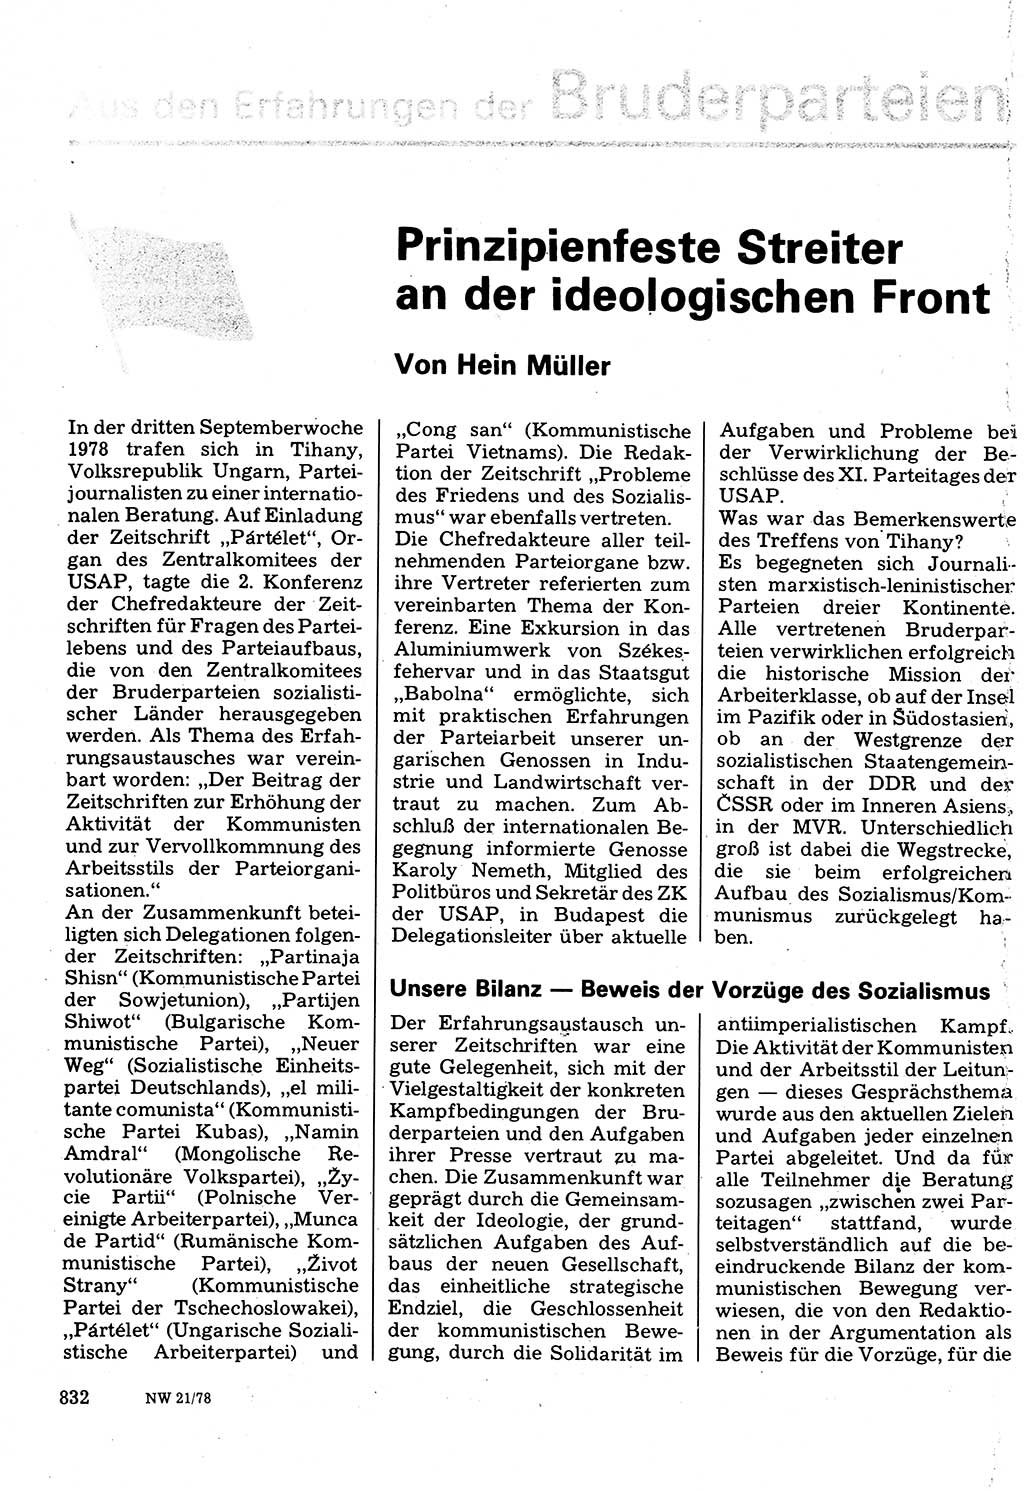 Neuer Weg (NW), Organ des Zentralkomitees (ZK) der SED (Sozialistische Einheitspartei Deutschlands) für Fragen des Parteilebens, 33. Jahrgang [Deutsche Demokratische Republik (DDR)] 1978, Seite 832 (NW ZK SED DDR 1978, S. 832)